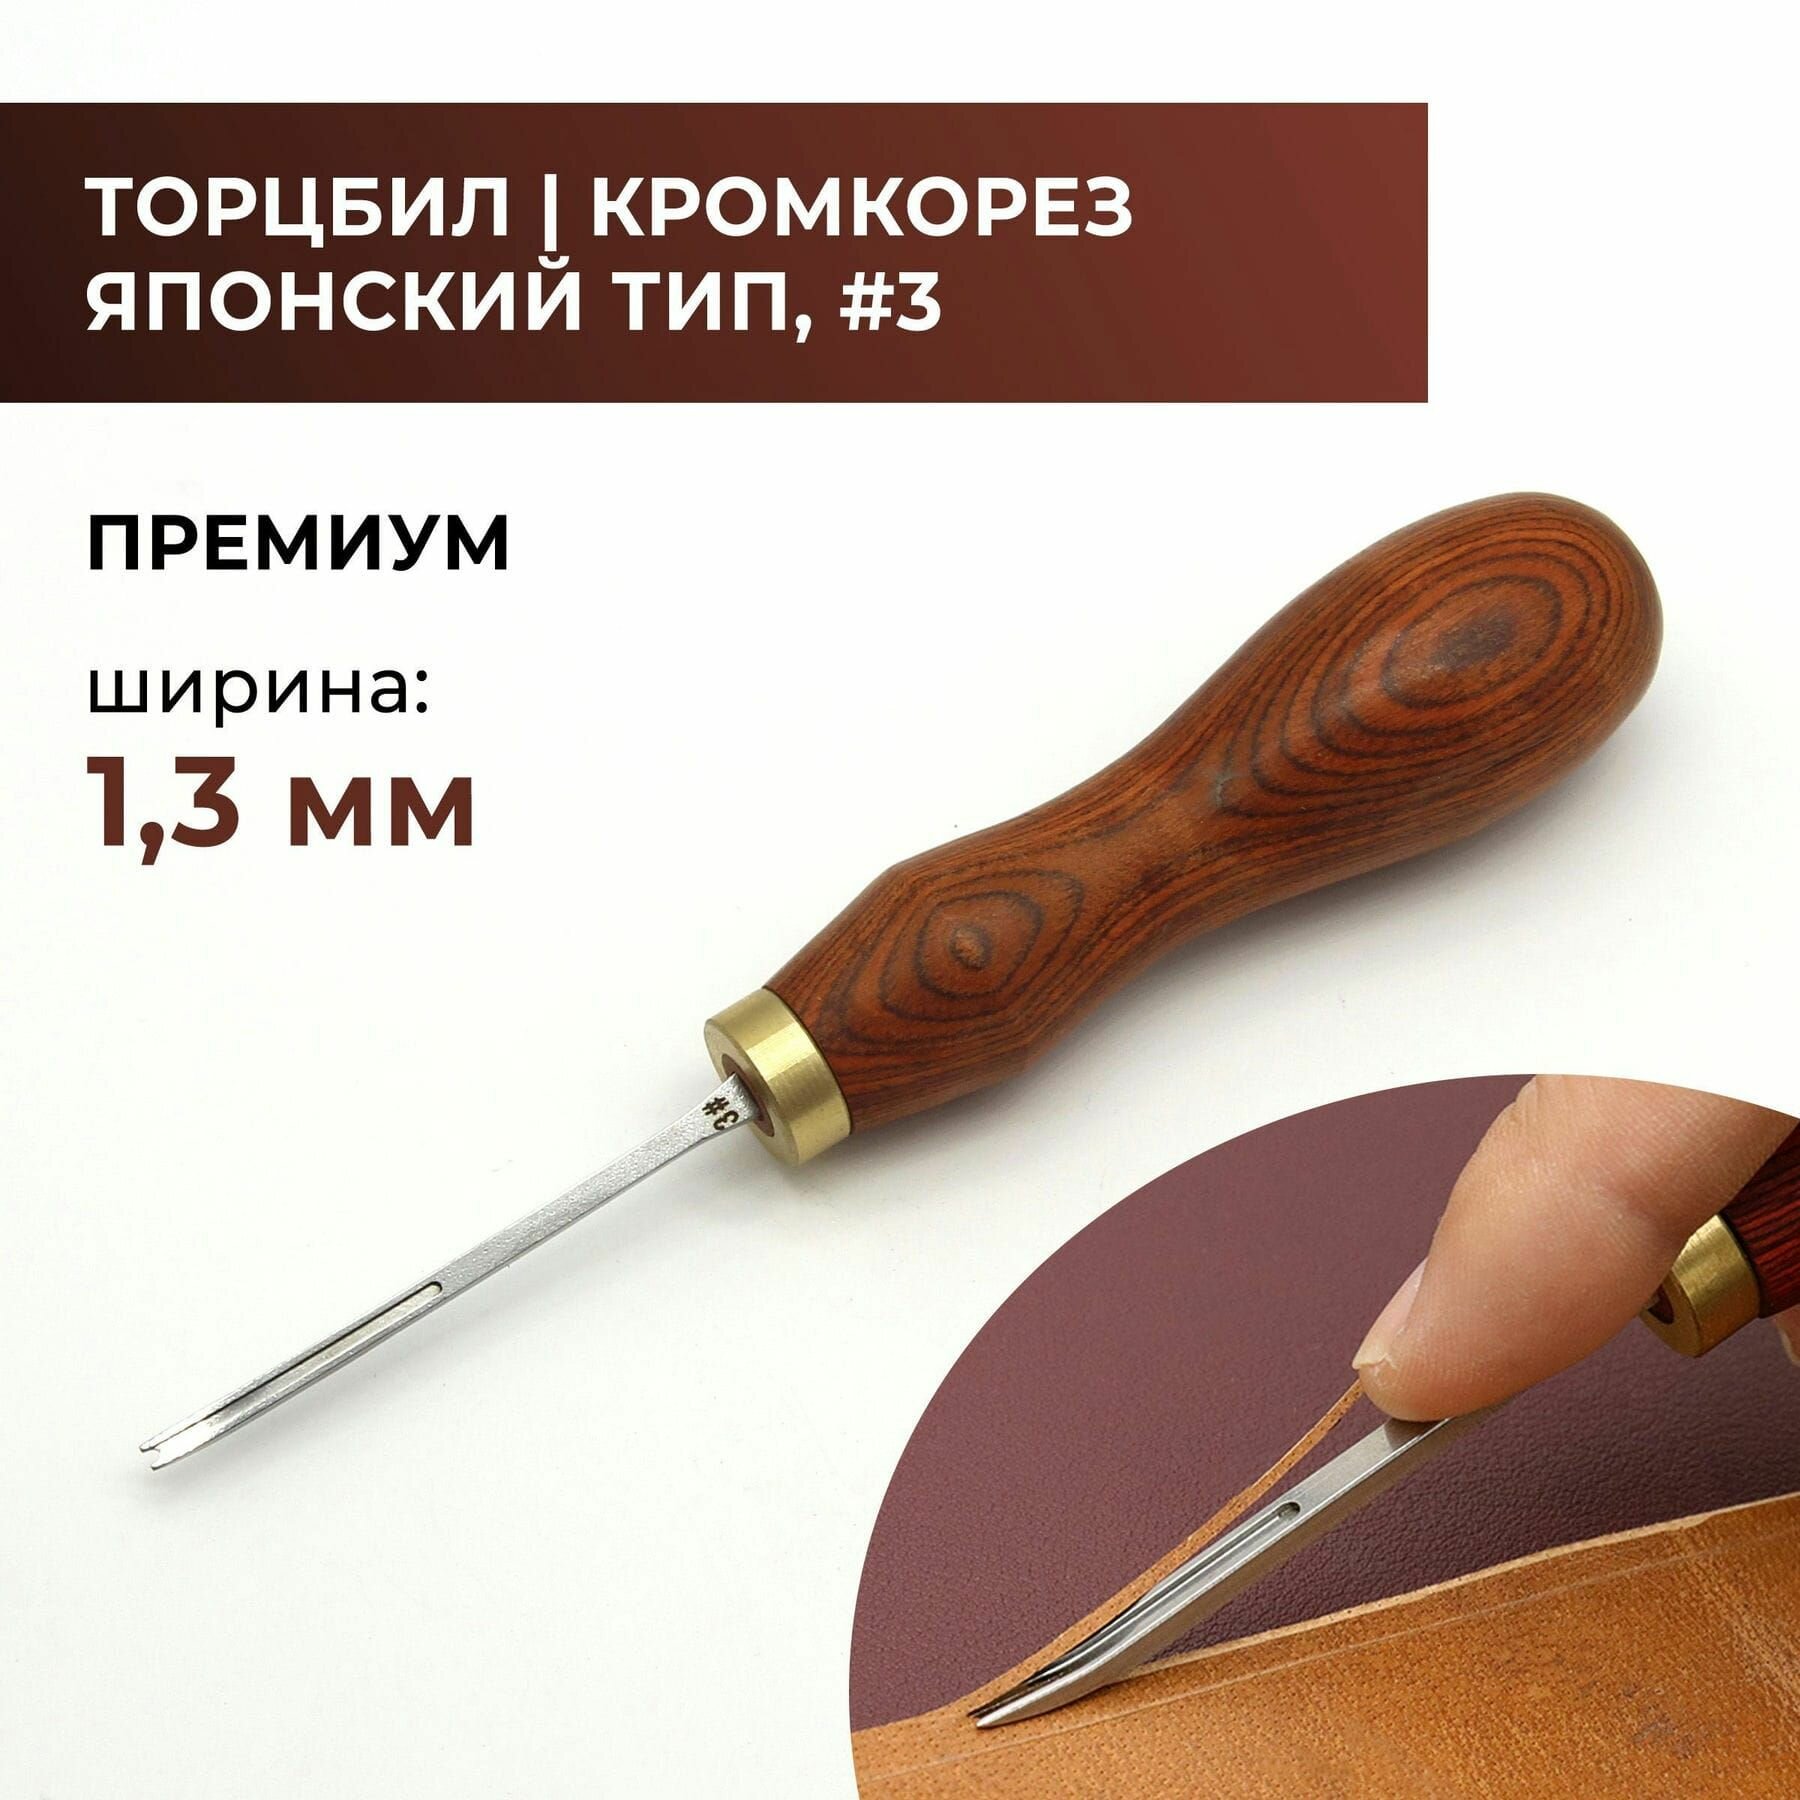 Кромкорез / Фаскорез / Торцбил премиум "Японский тип" №3 - 1.3 мм коричневая ручка